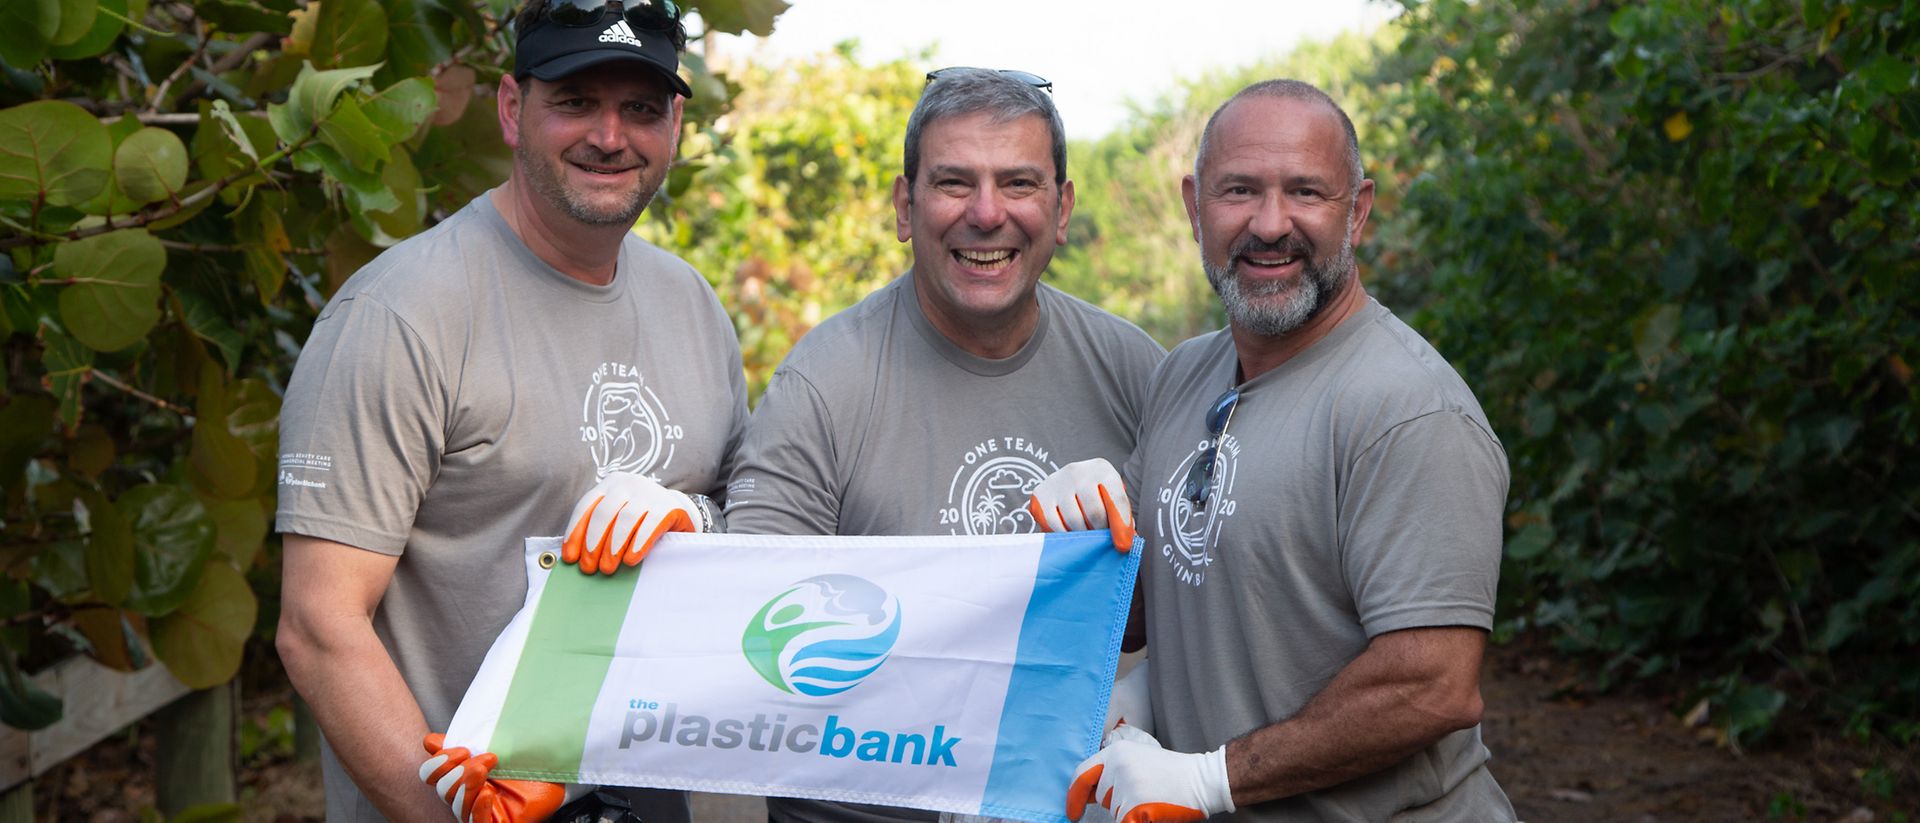 David Katz di Plastic Bank costruisce ecosistemi etici finalizzati alla raccolta e al riciclo dei rifiuti in plastica